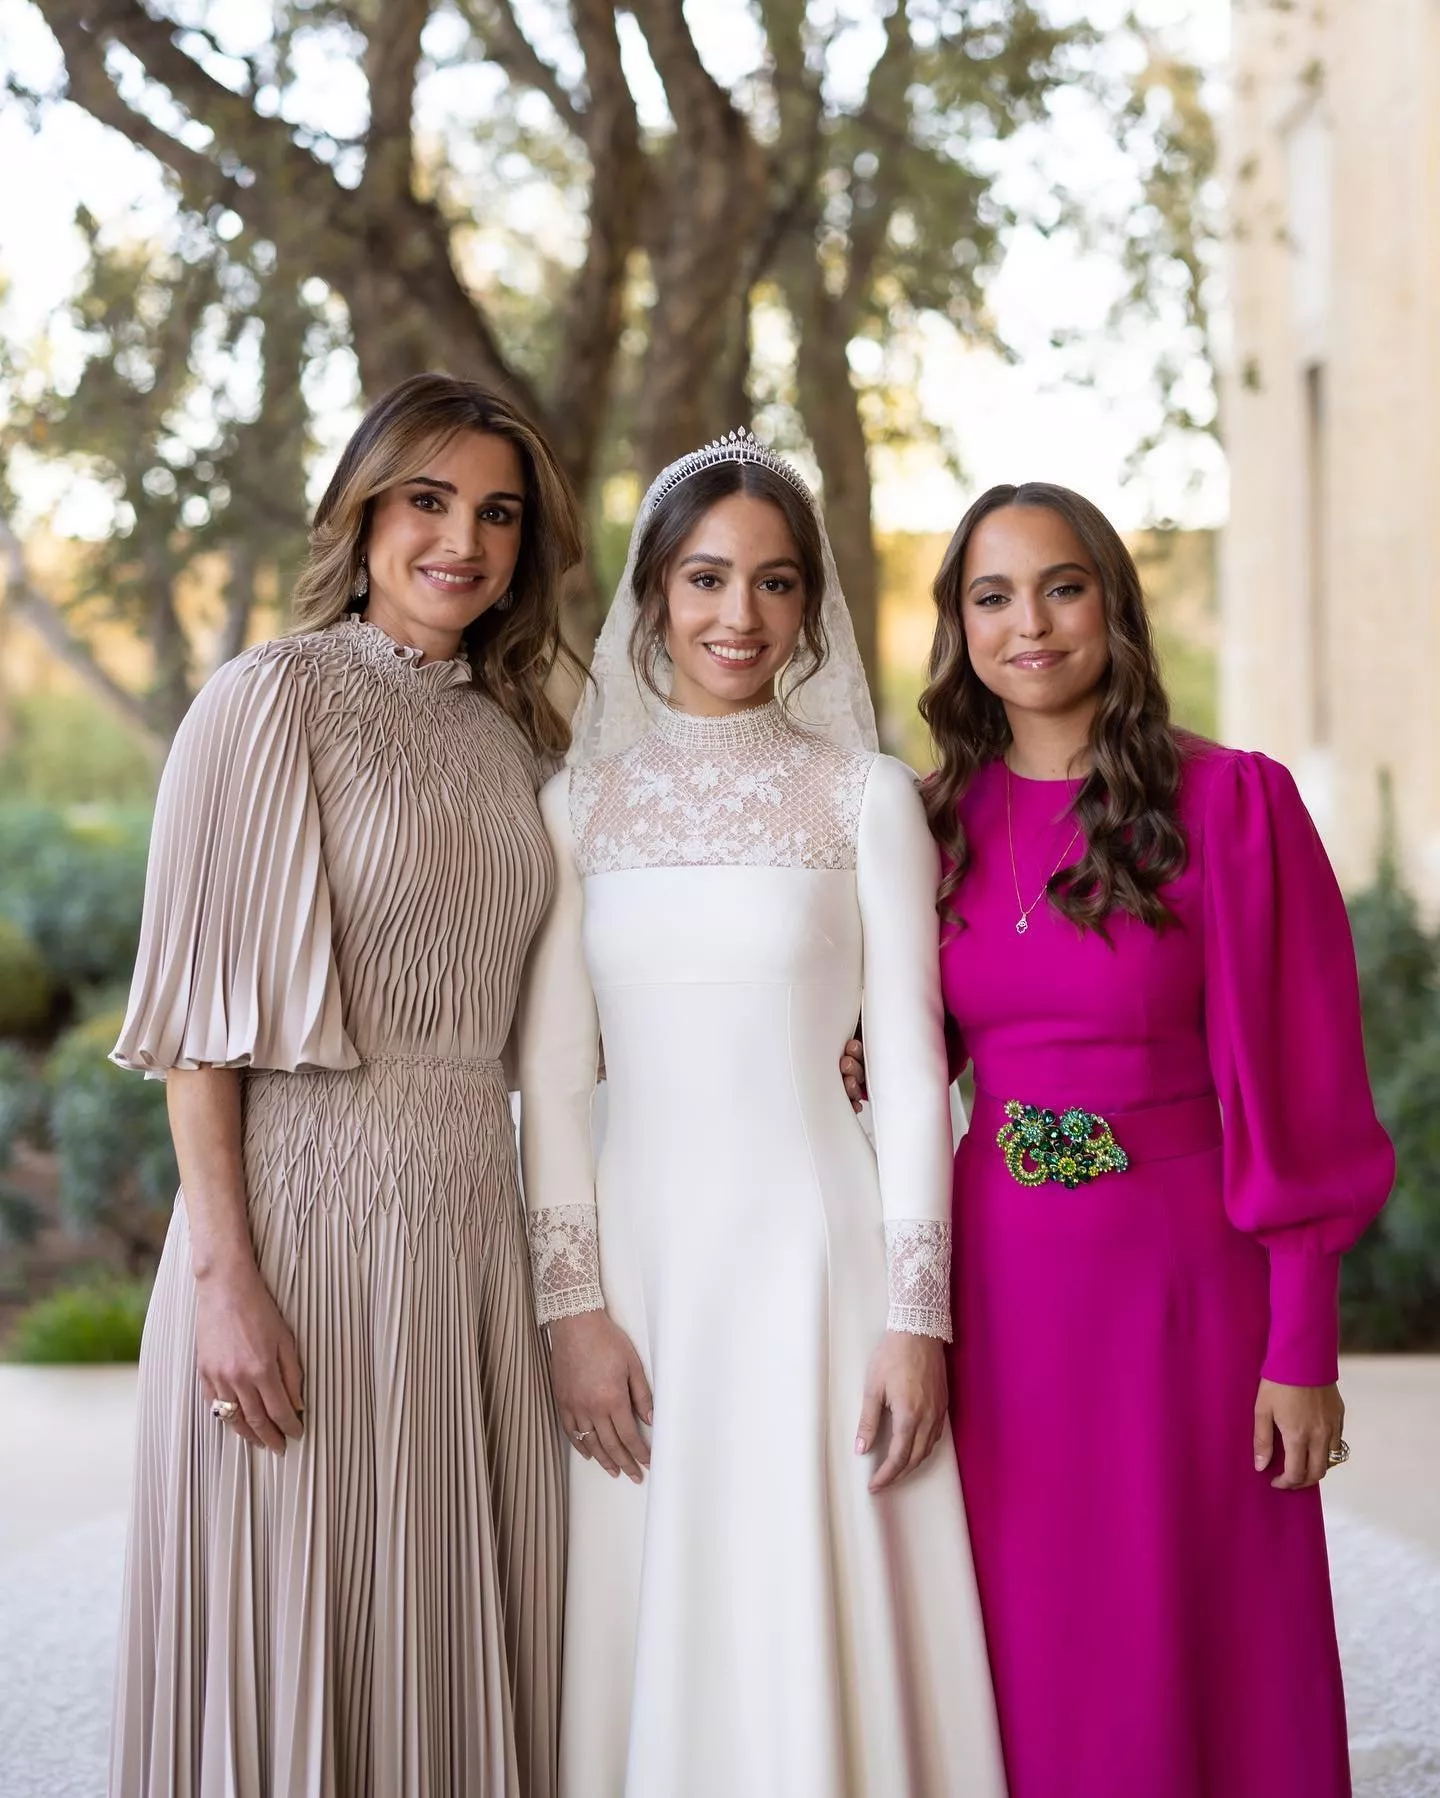 سيرة الملكة رانيا: ماذا كانت تعمل قبل الزواج؟ وكيف تعرّفت على الملك؟